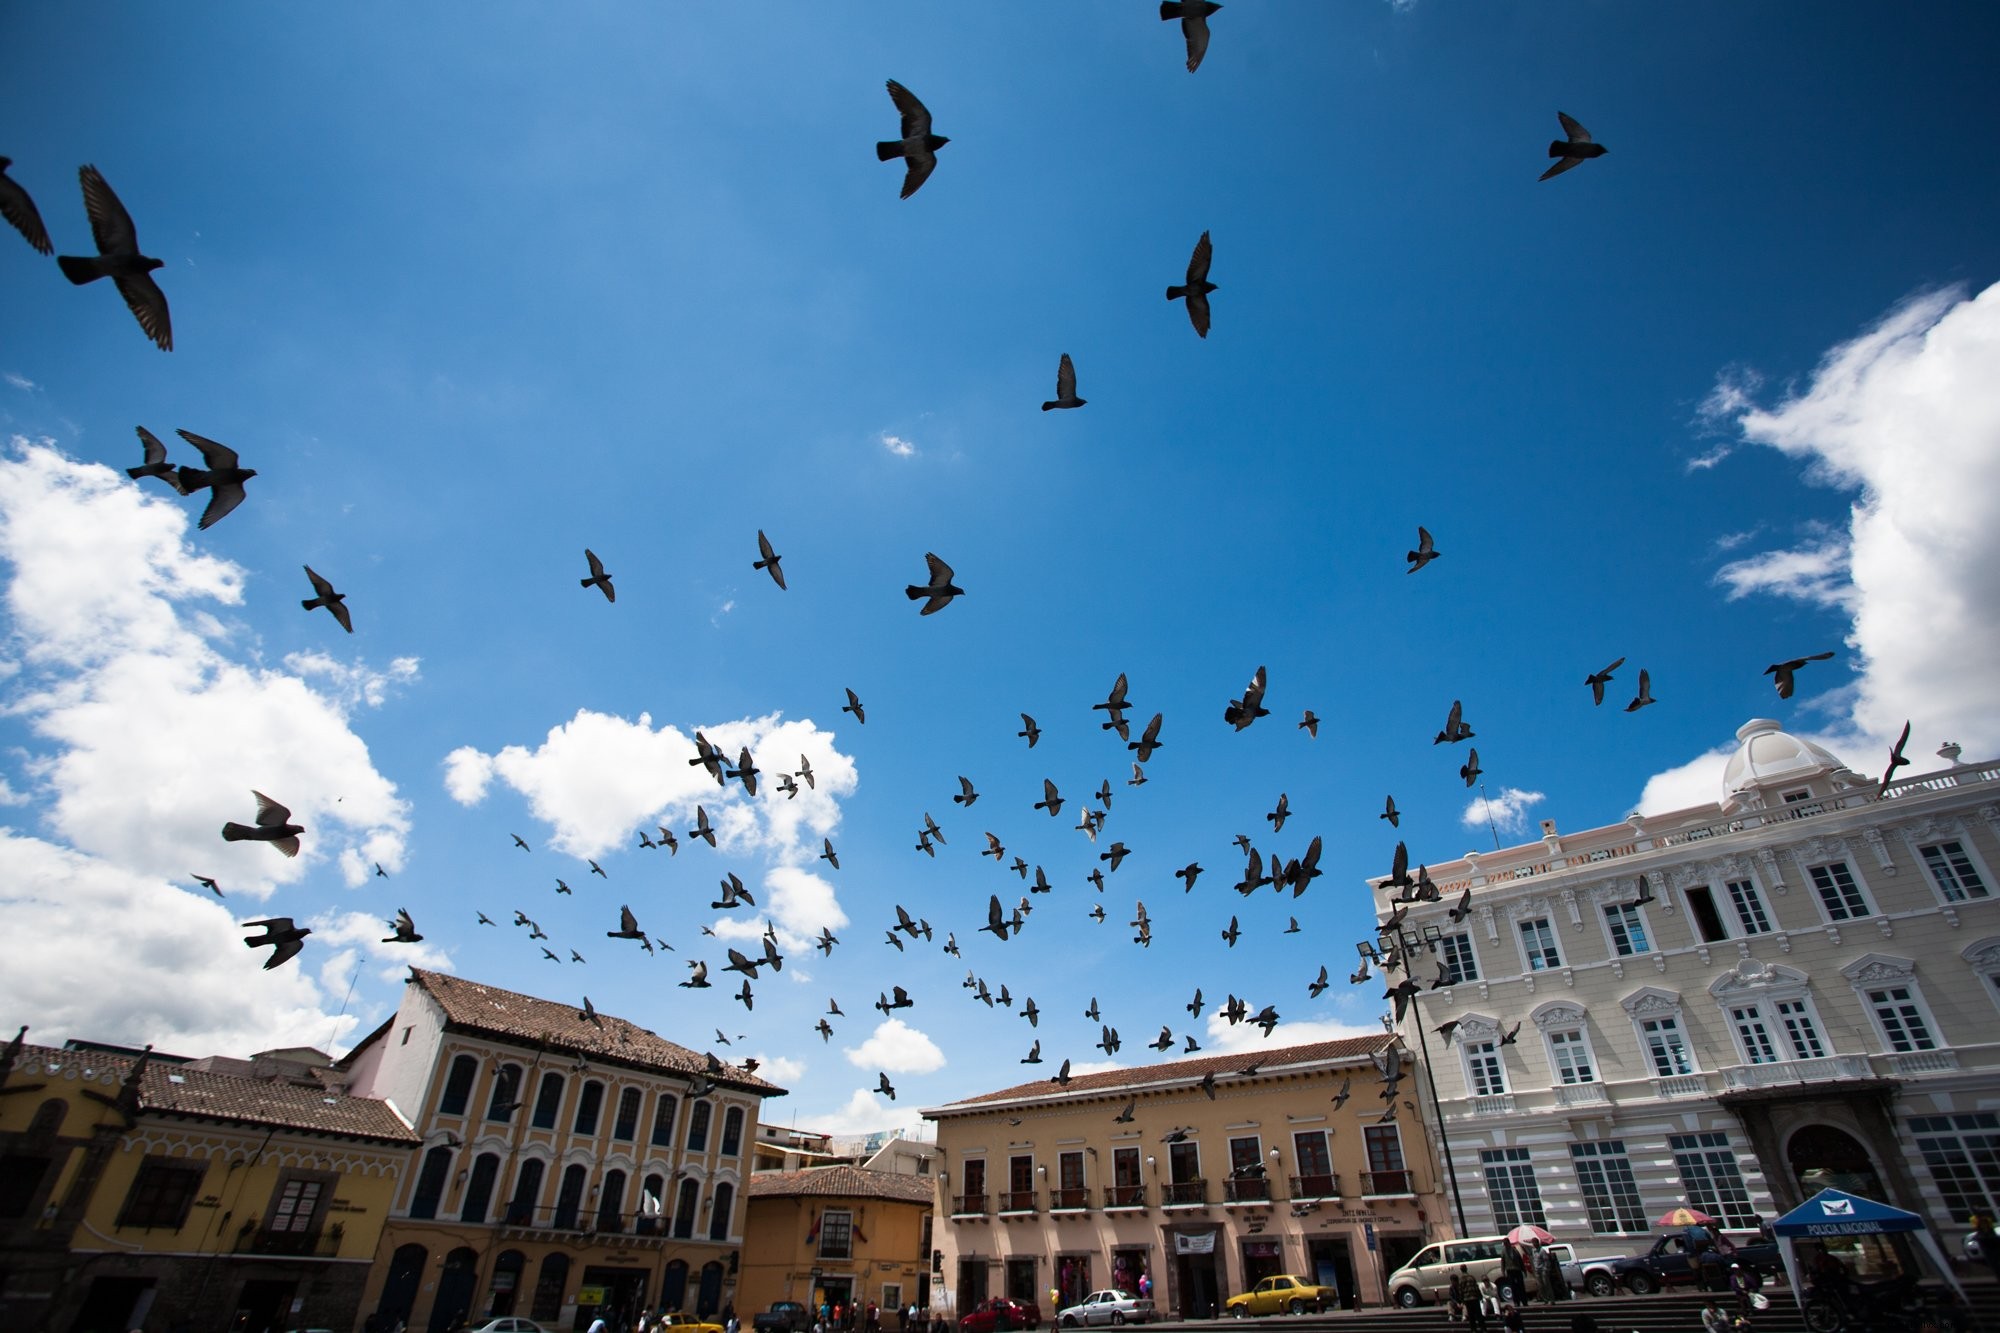 Oiseaux survolant le centre urbain Photo